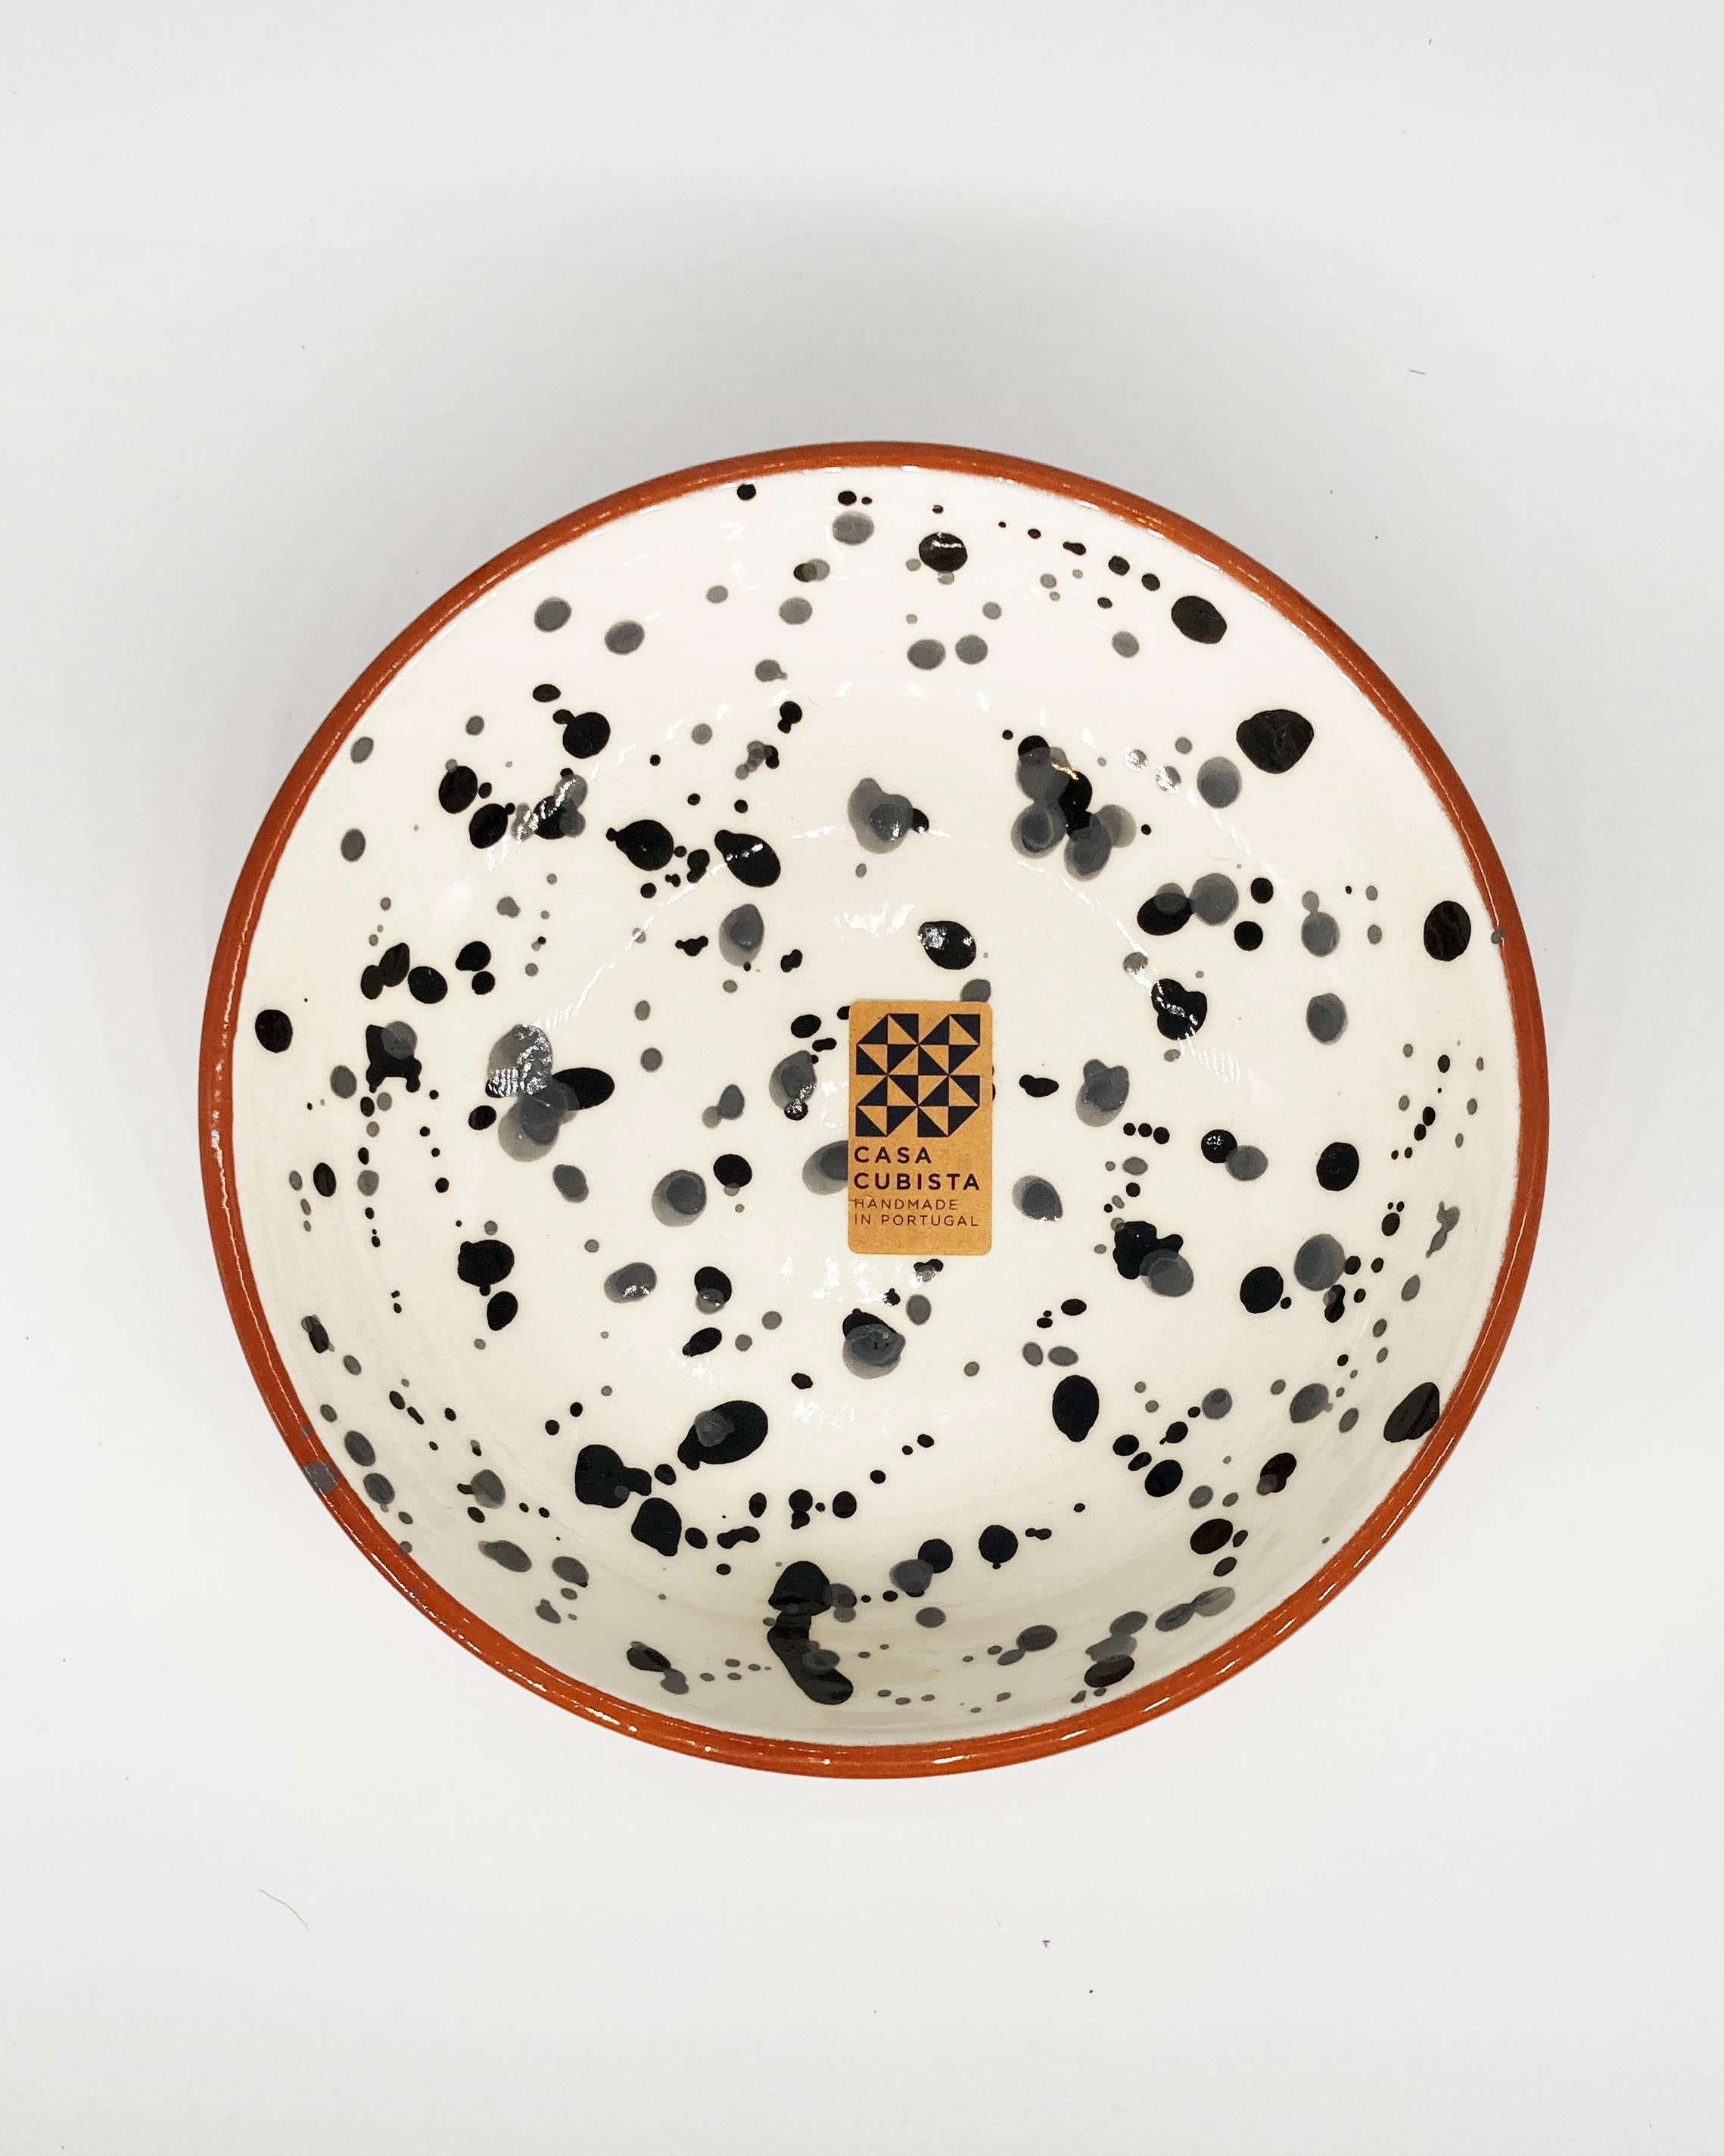 Diese handgefertigten und handbemalten Keramiken aus einem der Mutterländer, Portugal, verleihen Ihrem Tisch einen modernen und grafischen Touch und sind perfekt zu kombinieren. Diese Schalen mit Polkadot-Muster sind Teil einer größeren Kollektion,